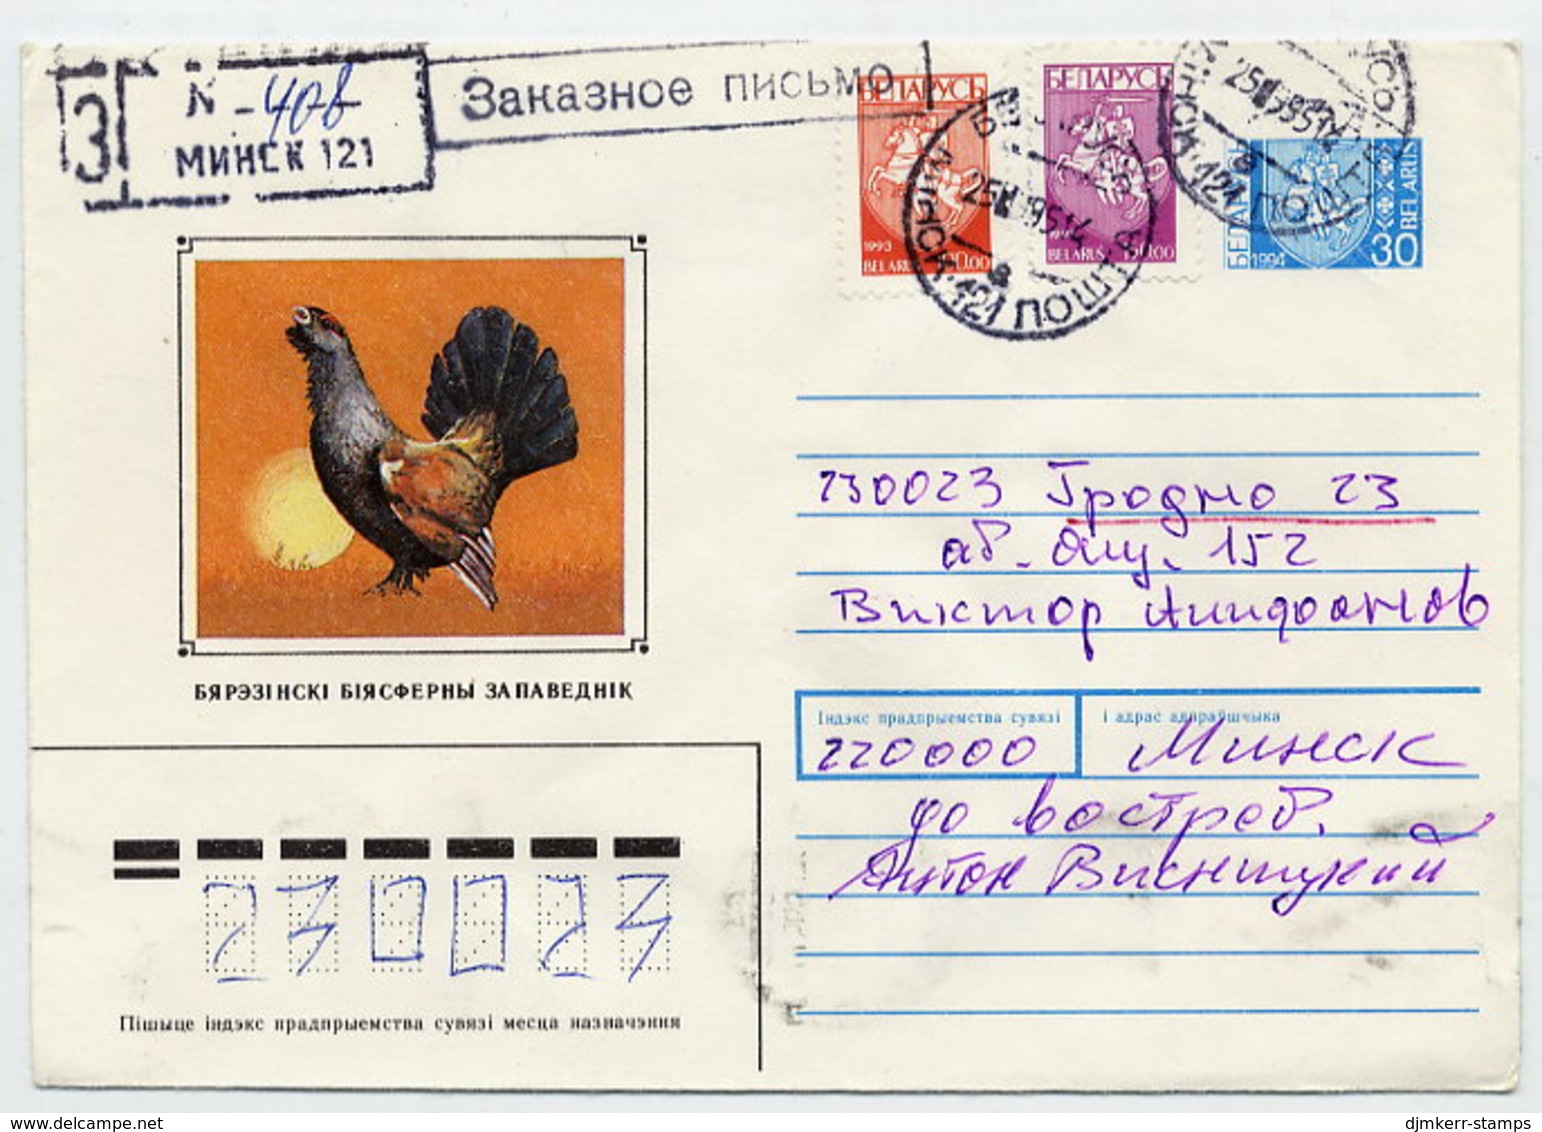 BELARUS 1995 Stationery Envelope 30 R.blue Registered With Additional Franking.  Michel U58b - Belarus